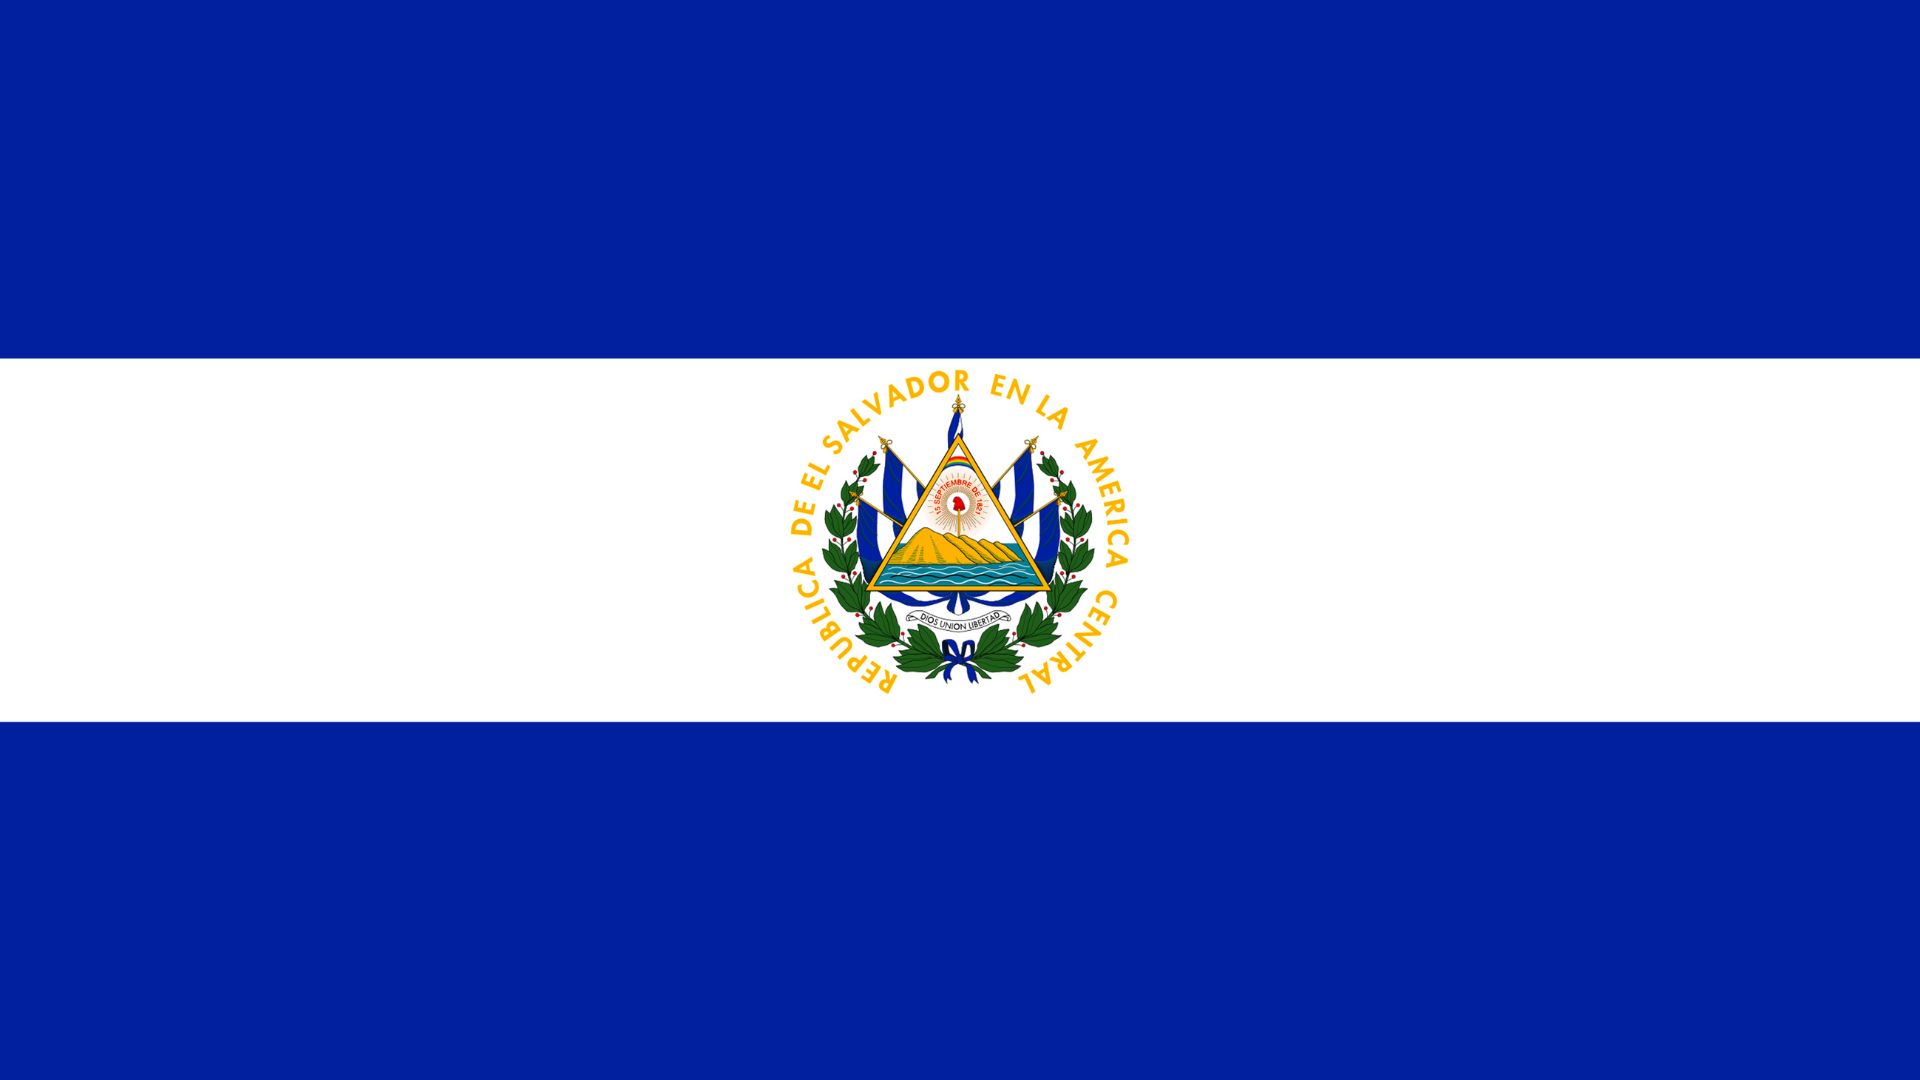 A bandeira de El Salvador é baseada na bandeira dos Estados Unidos da América Central, foi inicialmente adotada em 1822, abandonada em 1865, reintalada em 1912, e confirmada em 1972. Ela possui duas cores: azul e branco.